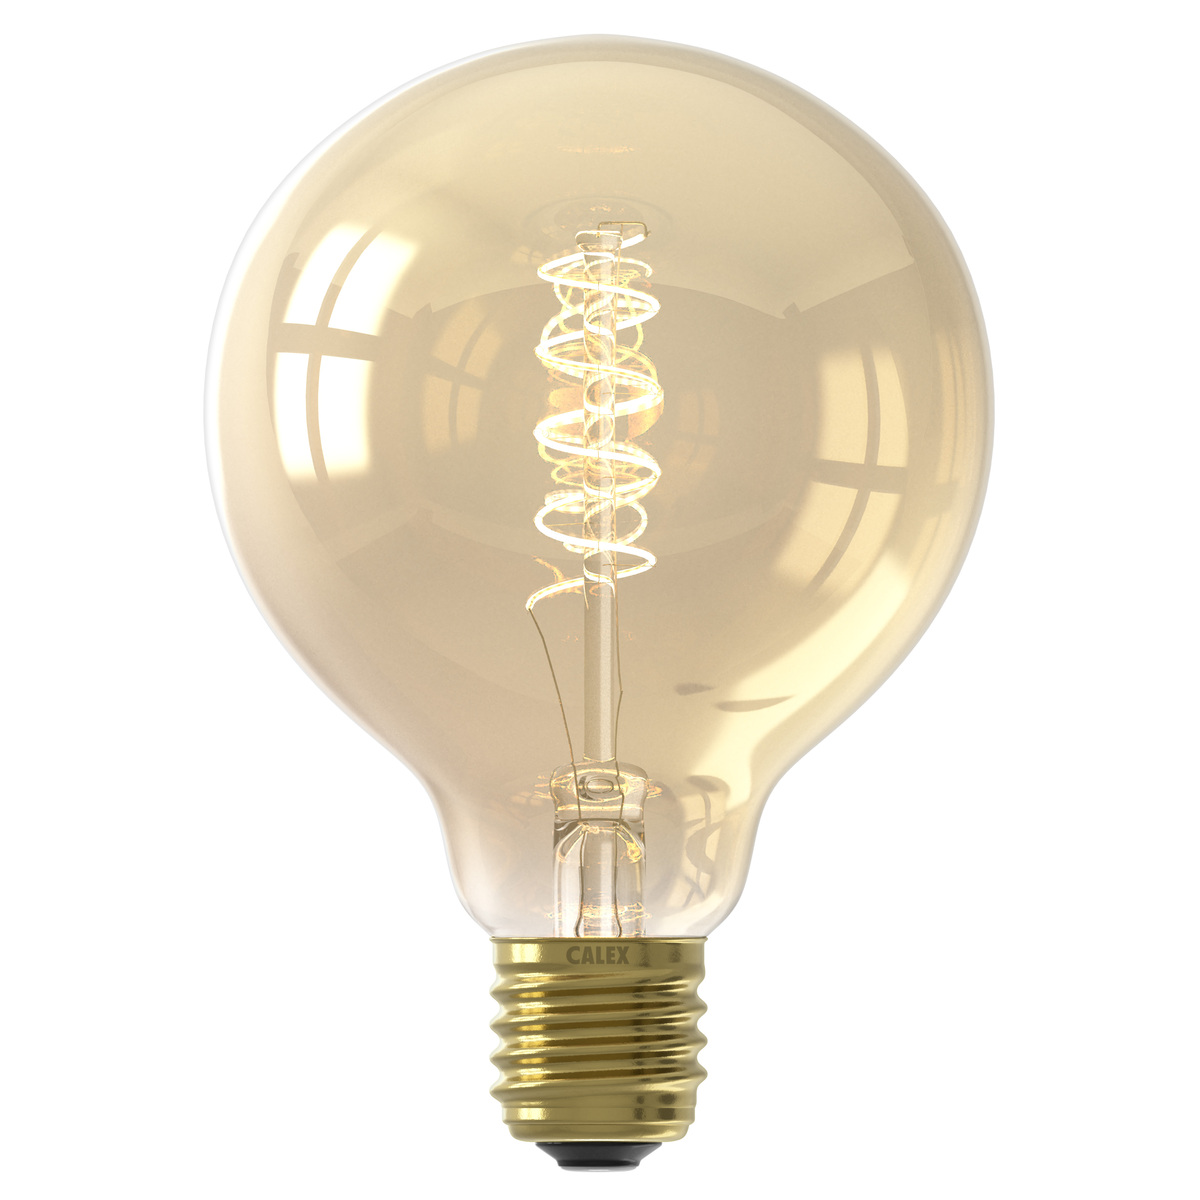 Ampoule filament décorative en glass ambre